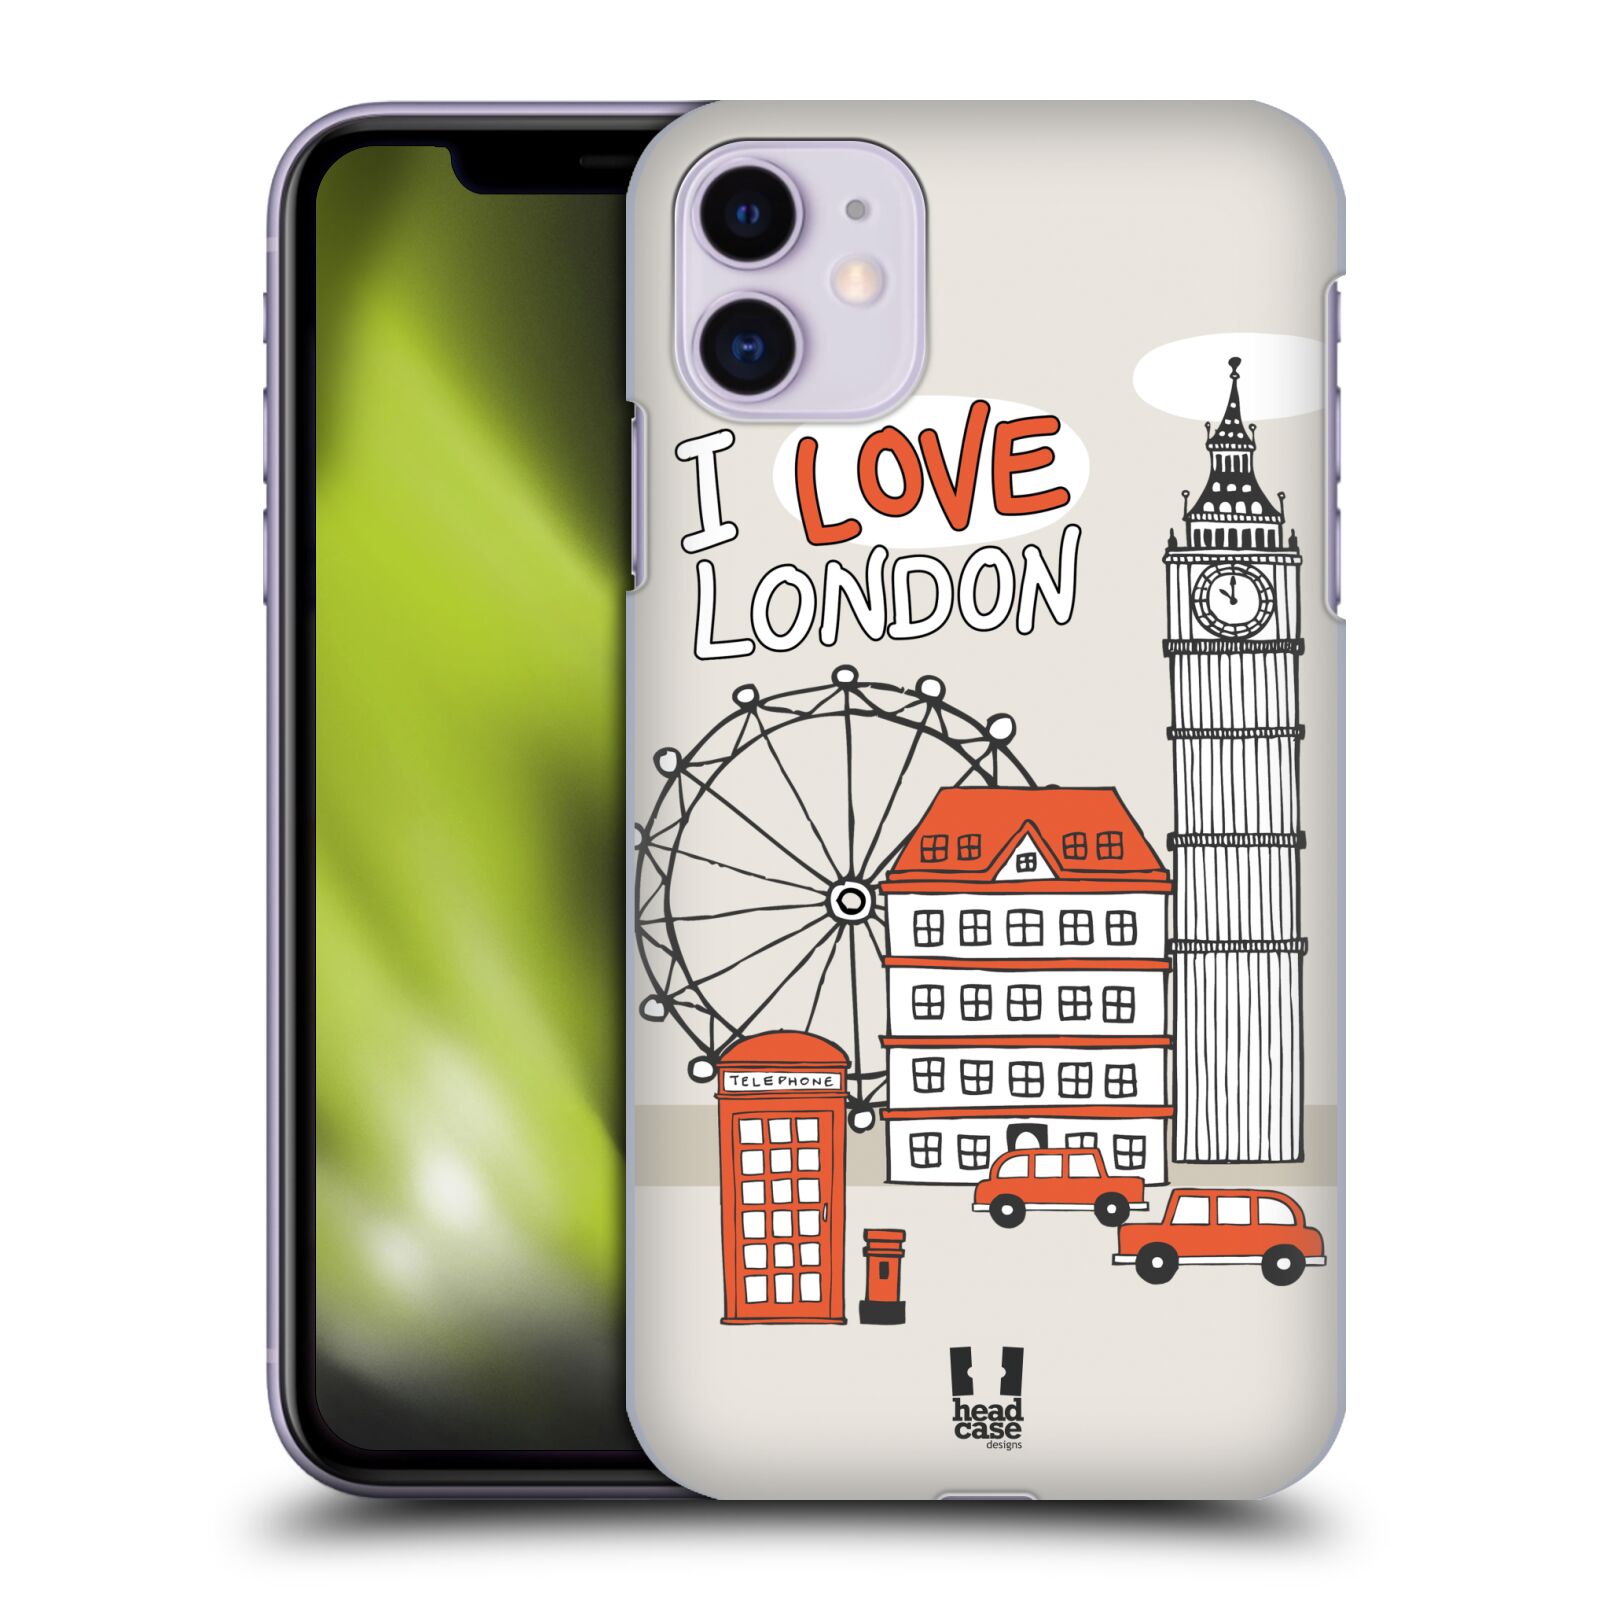 Pouzdro na mobil Apple Iphone 11 - HEAD CASE - vzor Kreslená městečka ČERVENÁ, Anglie, Londýn, I LOVE LONDON